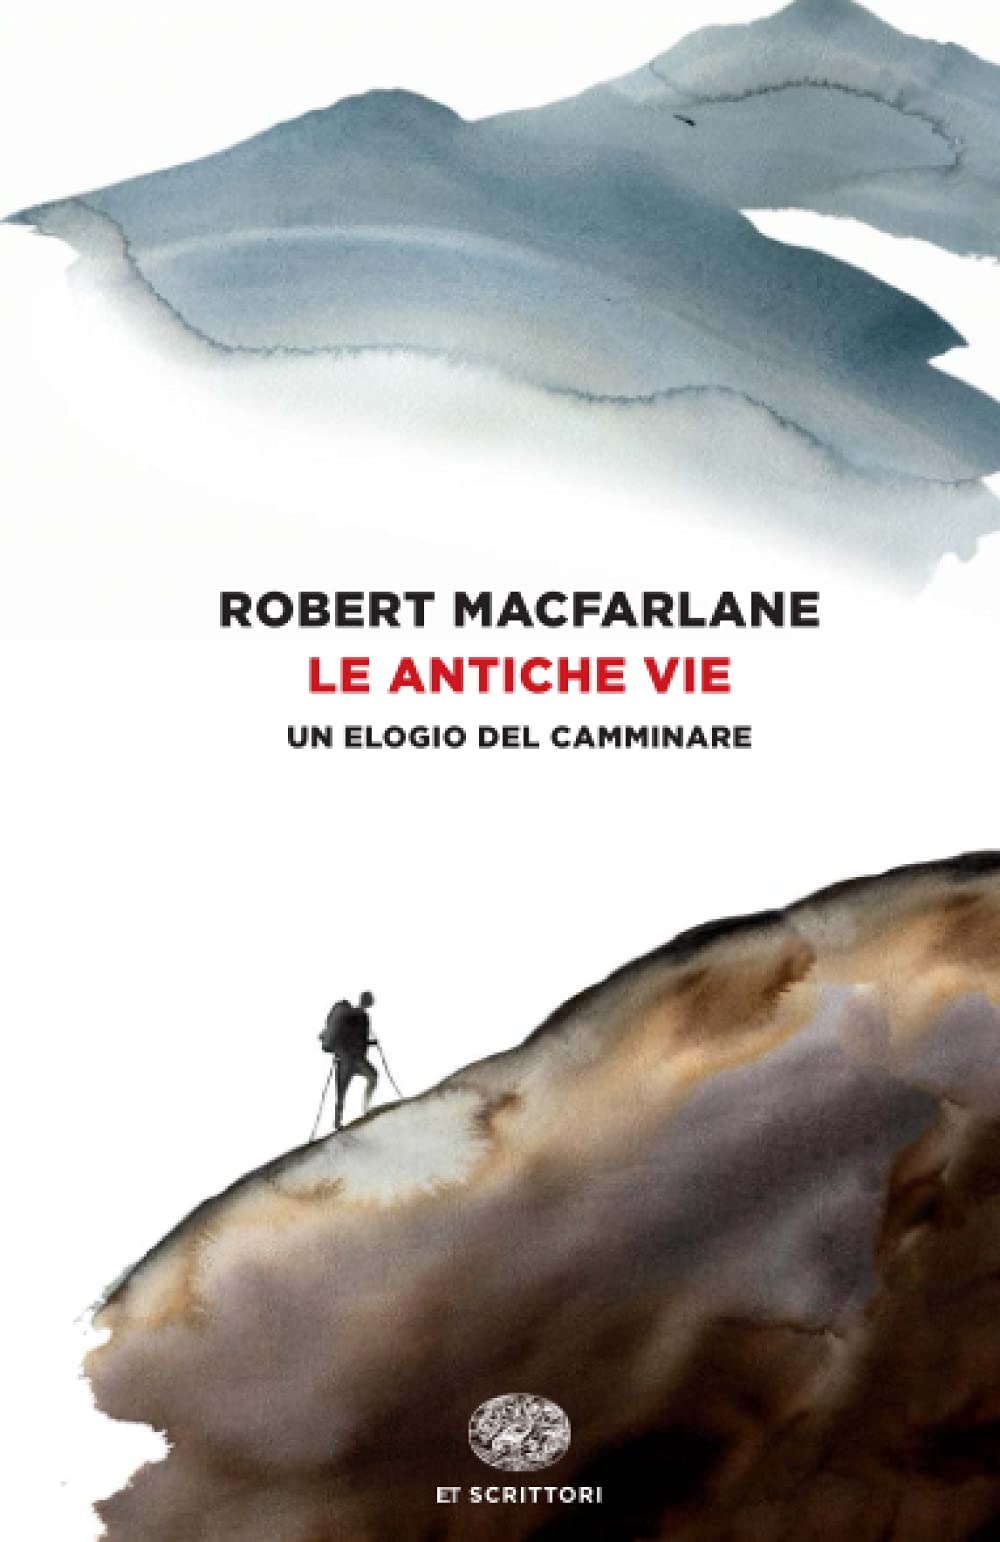 Le antiche vie. Un elogio del camminare - Robert Macfarlane (Einaudi)